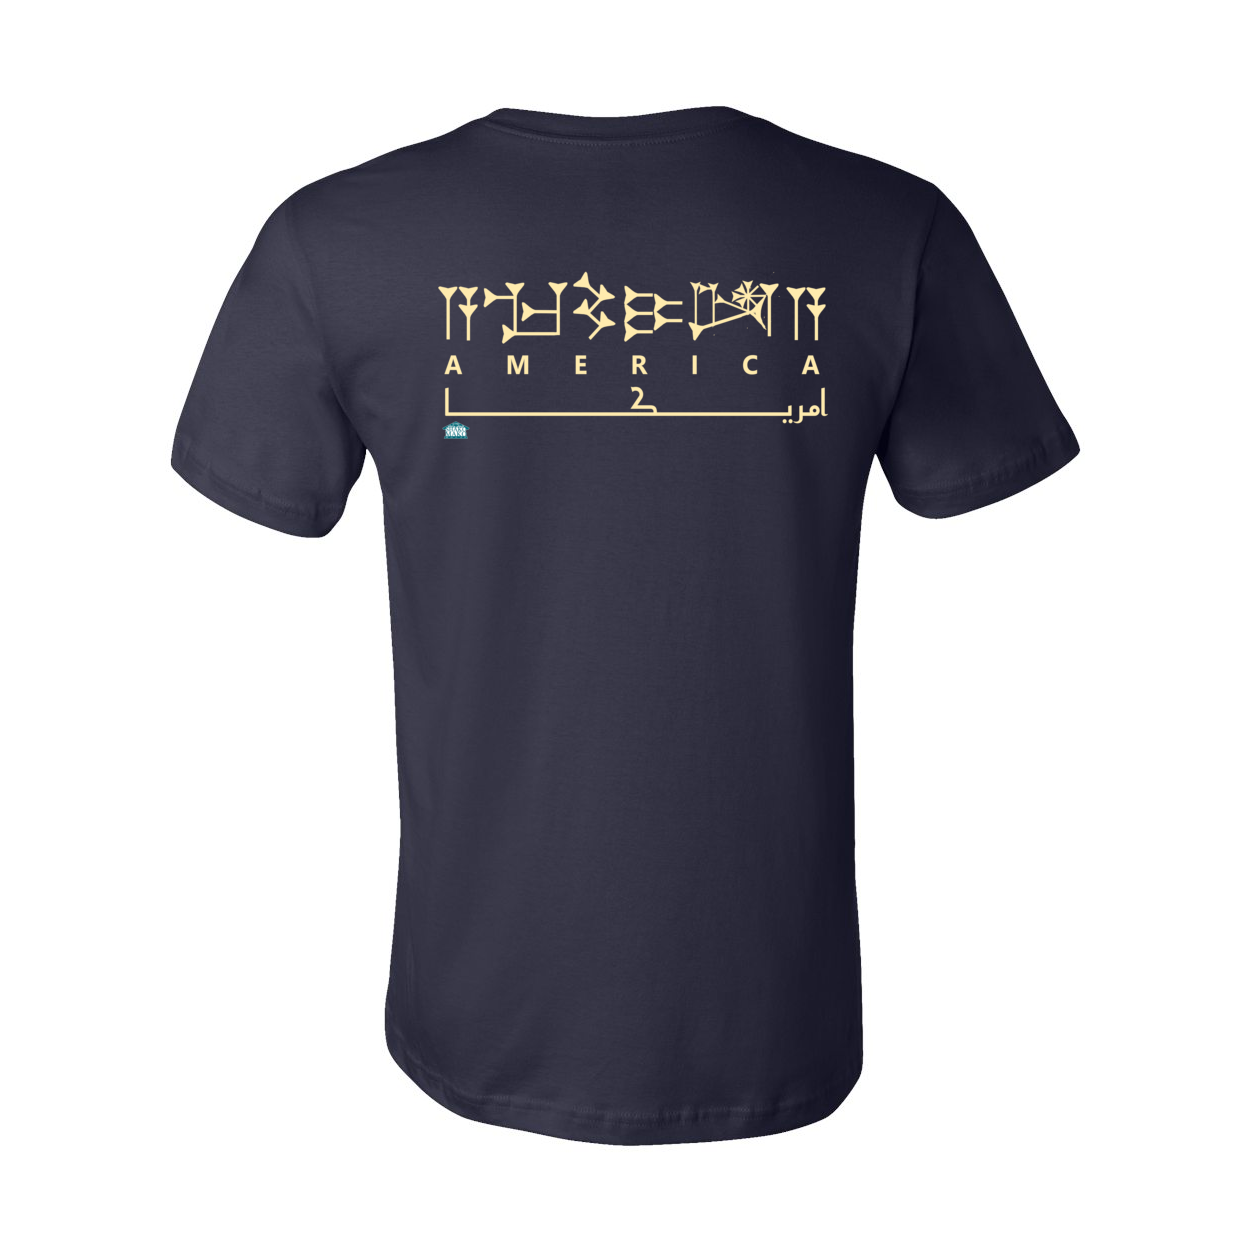 Unisex Sumerian Script America Shirt